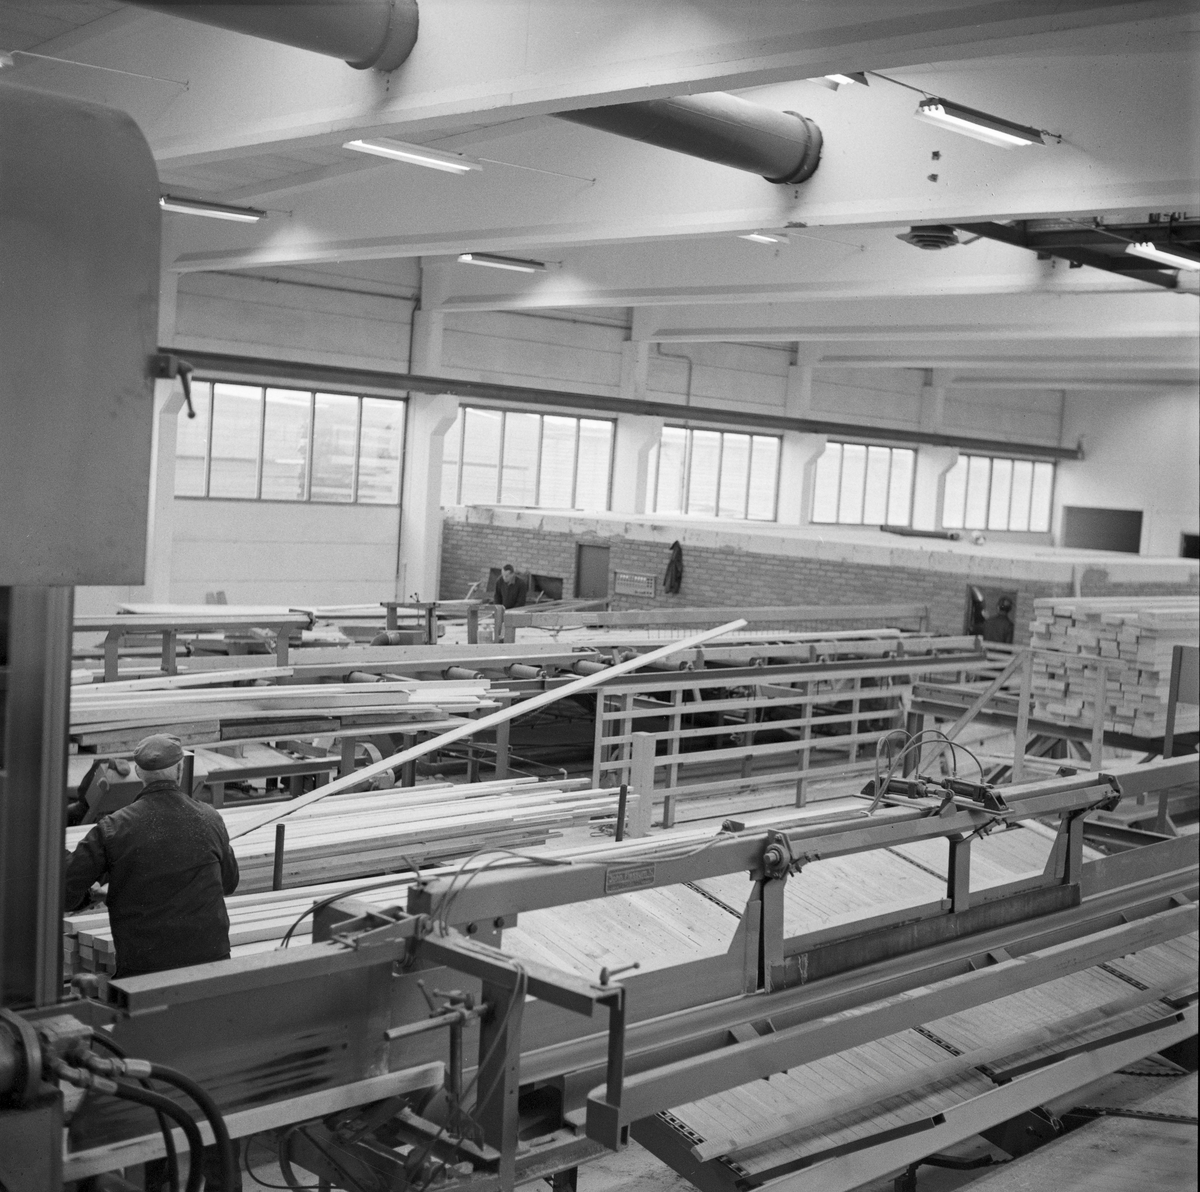 Industrilokale for trelastproduksjon ved Trysil kommunale Sag og Høvleri i Hedmark, høsten 1970. I 1970-71 ble denne bedriften modernisert for 3,7 millioner kroner, som på denne tida var et meget betydelig pengebeløp - en god del større enn hva lokalpolitikerne hadde akseptert da de stilte seg bak moderniseringsprosesessen. Målet var å sikre lokal foredling av mest mulig av det tømmeret som ble produsert i Trysil, og å bidra til å skape industriarbeidsplasser i skogsbygda. Den nye bygningsmassen ble oppført av betongelementer, både for å oppnå tilfredsstillende soliditet og fordi dette var brannresistente materialer. Dette fotografiet er muligens fra det nye høvleriet, som fikk ei grunnflate på drøyt 1 000 kvadratmeter. 

Mer informasjon om det nye sagbruket som ble reist i Trysil ved inngangen til 1970-åra er gjengitt under fanen «Opplysninger».